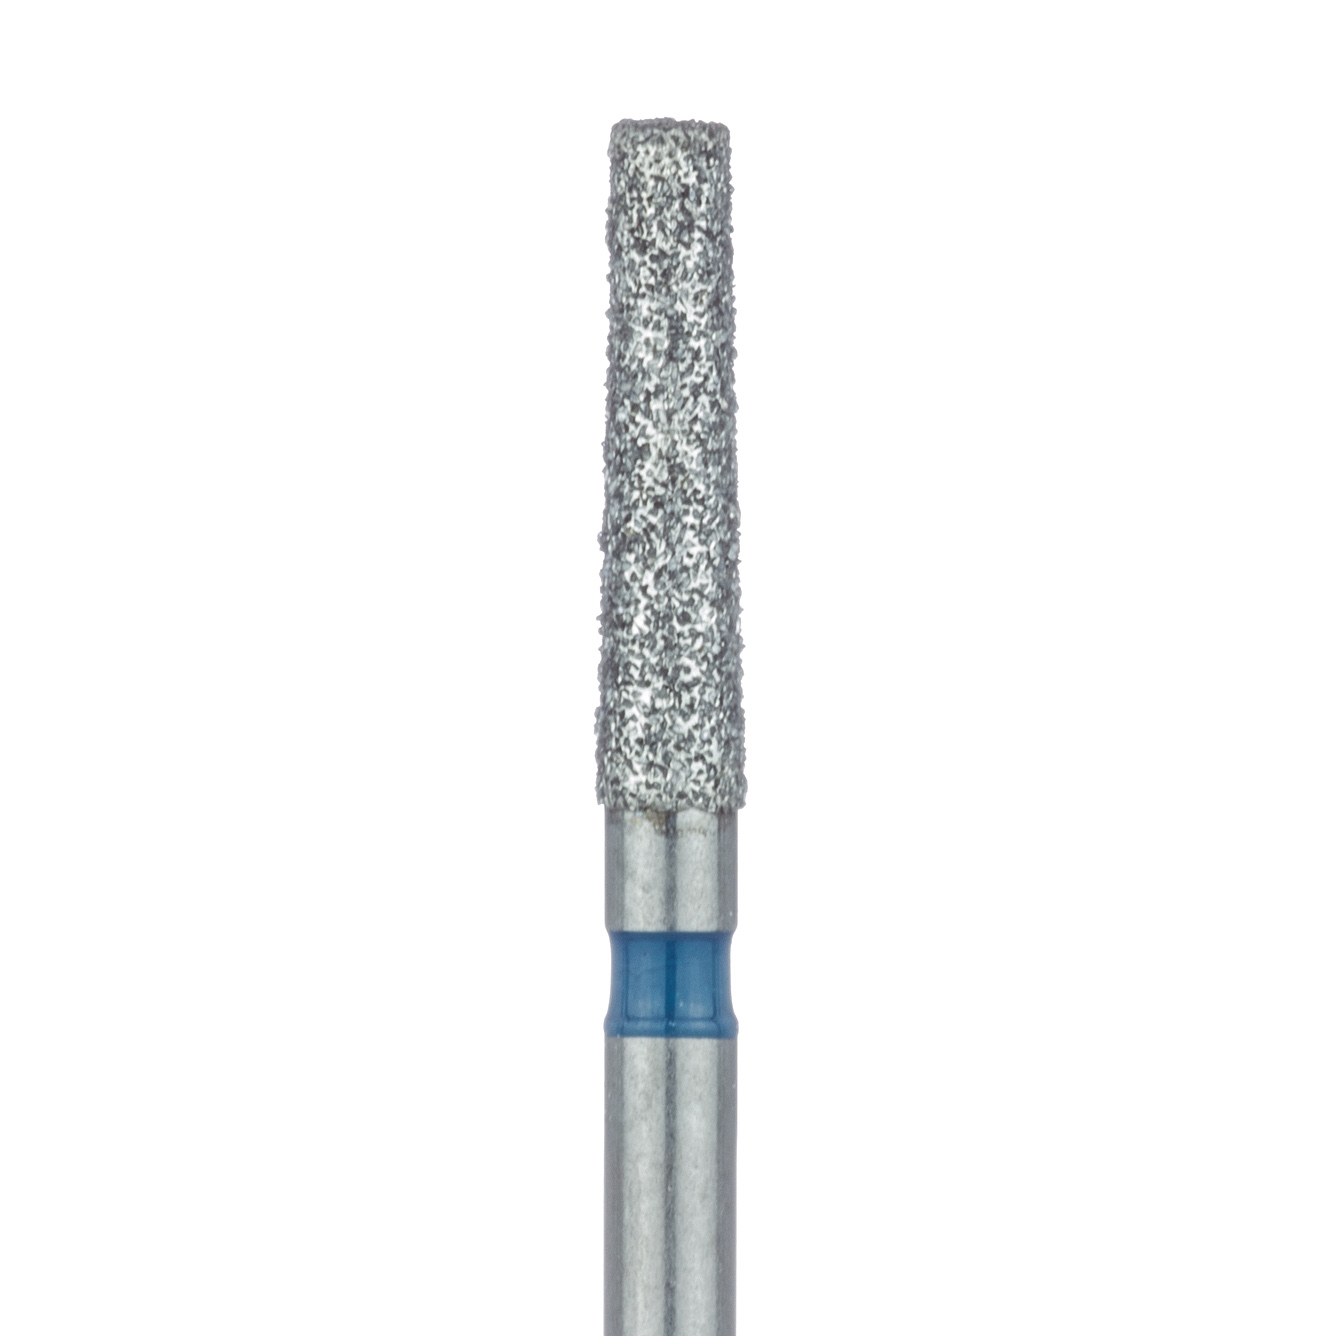 847-018-FG Long Tapered Flat End Diamond Bur, 1.8mm Ø, Medium, 1.2mm Tip Ø, FG